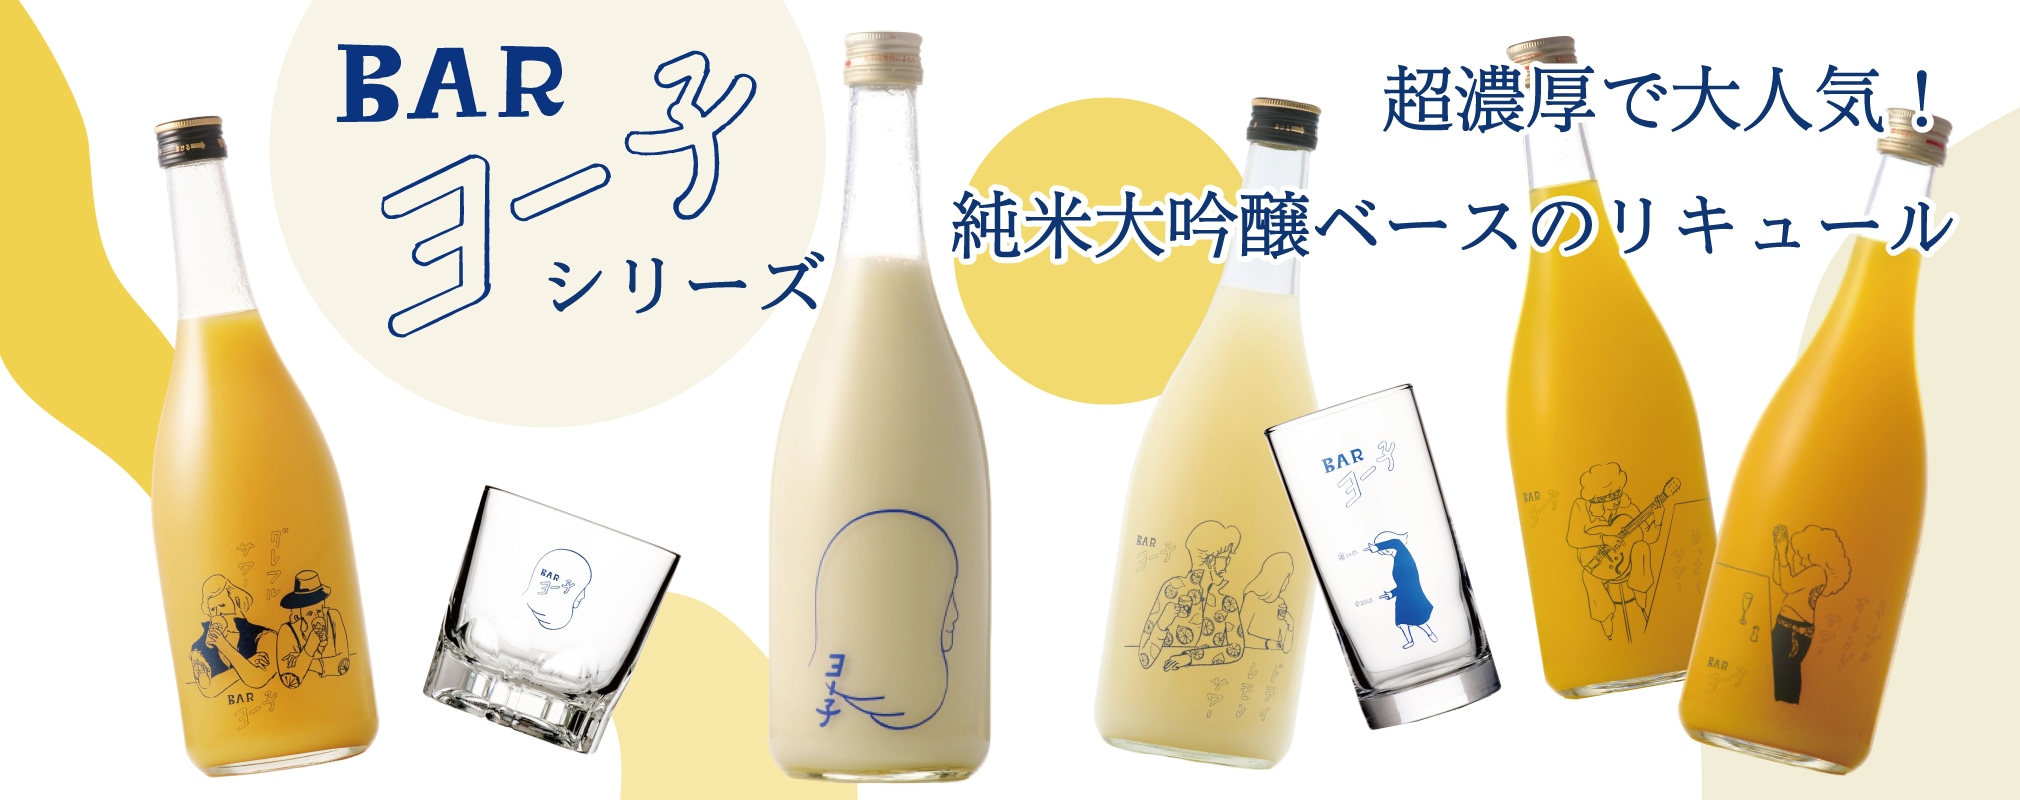 【Barヨー子 シリーズ】  純米大吟醸ベースのリキュール